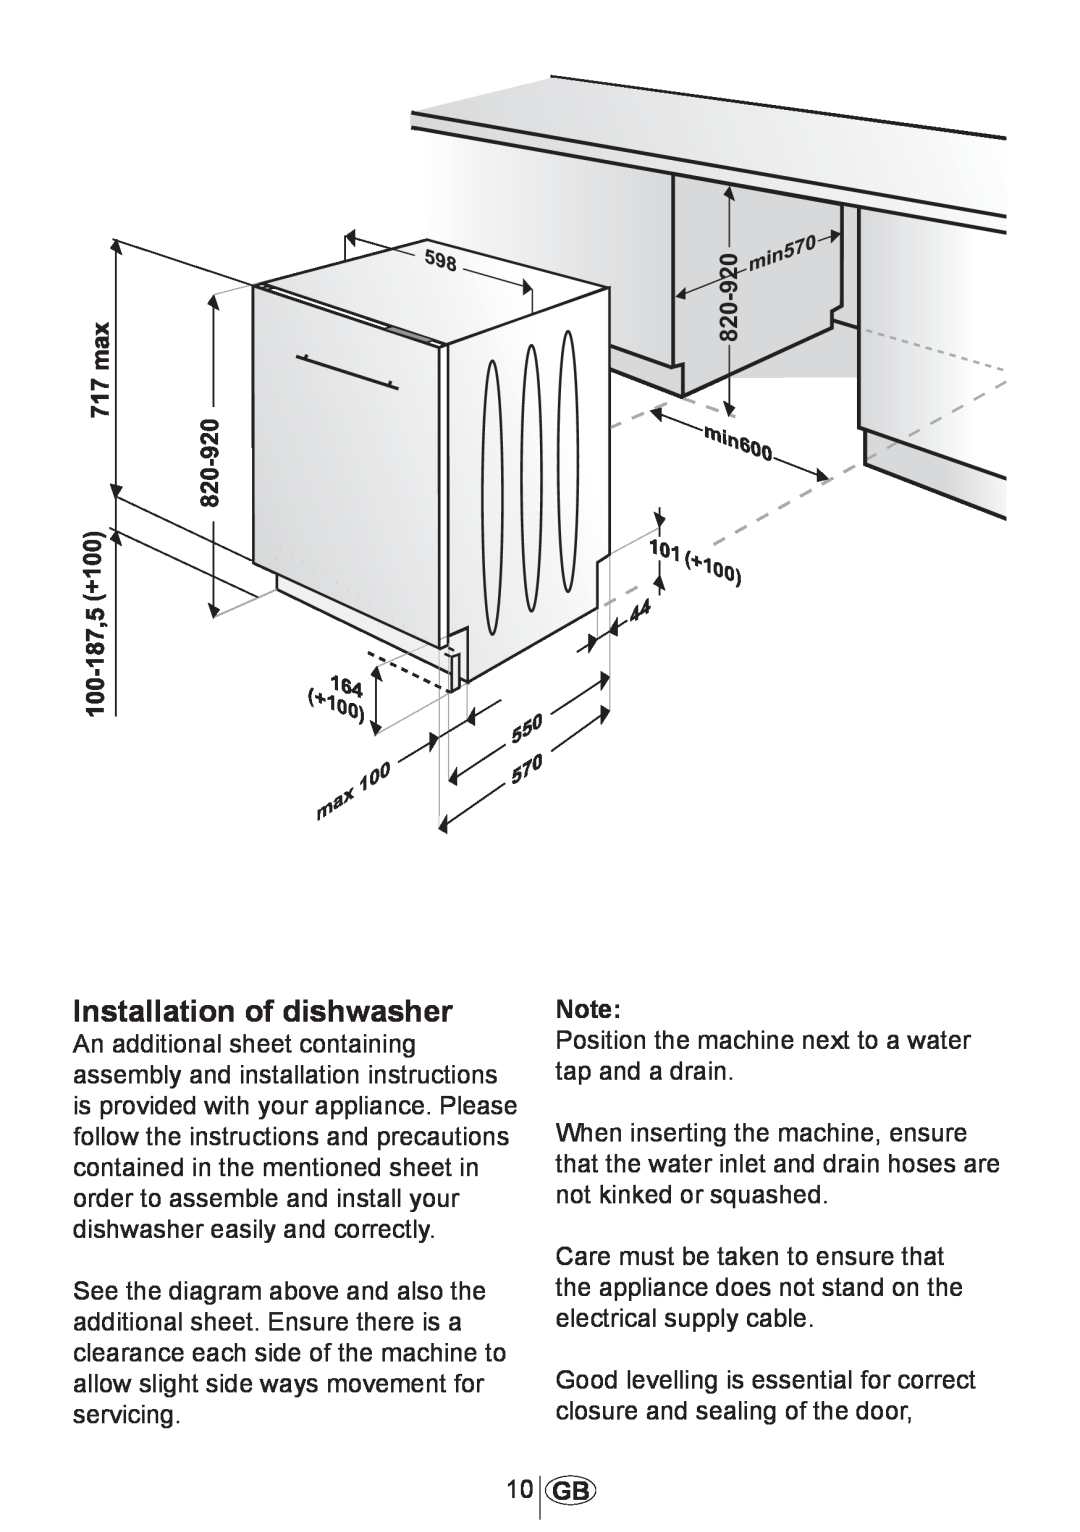 Beko DW602 manual Installation of dishwasher 